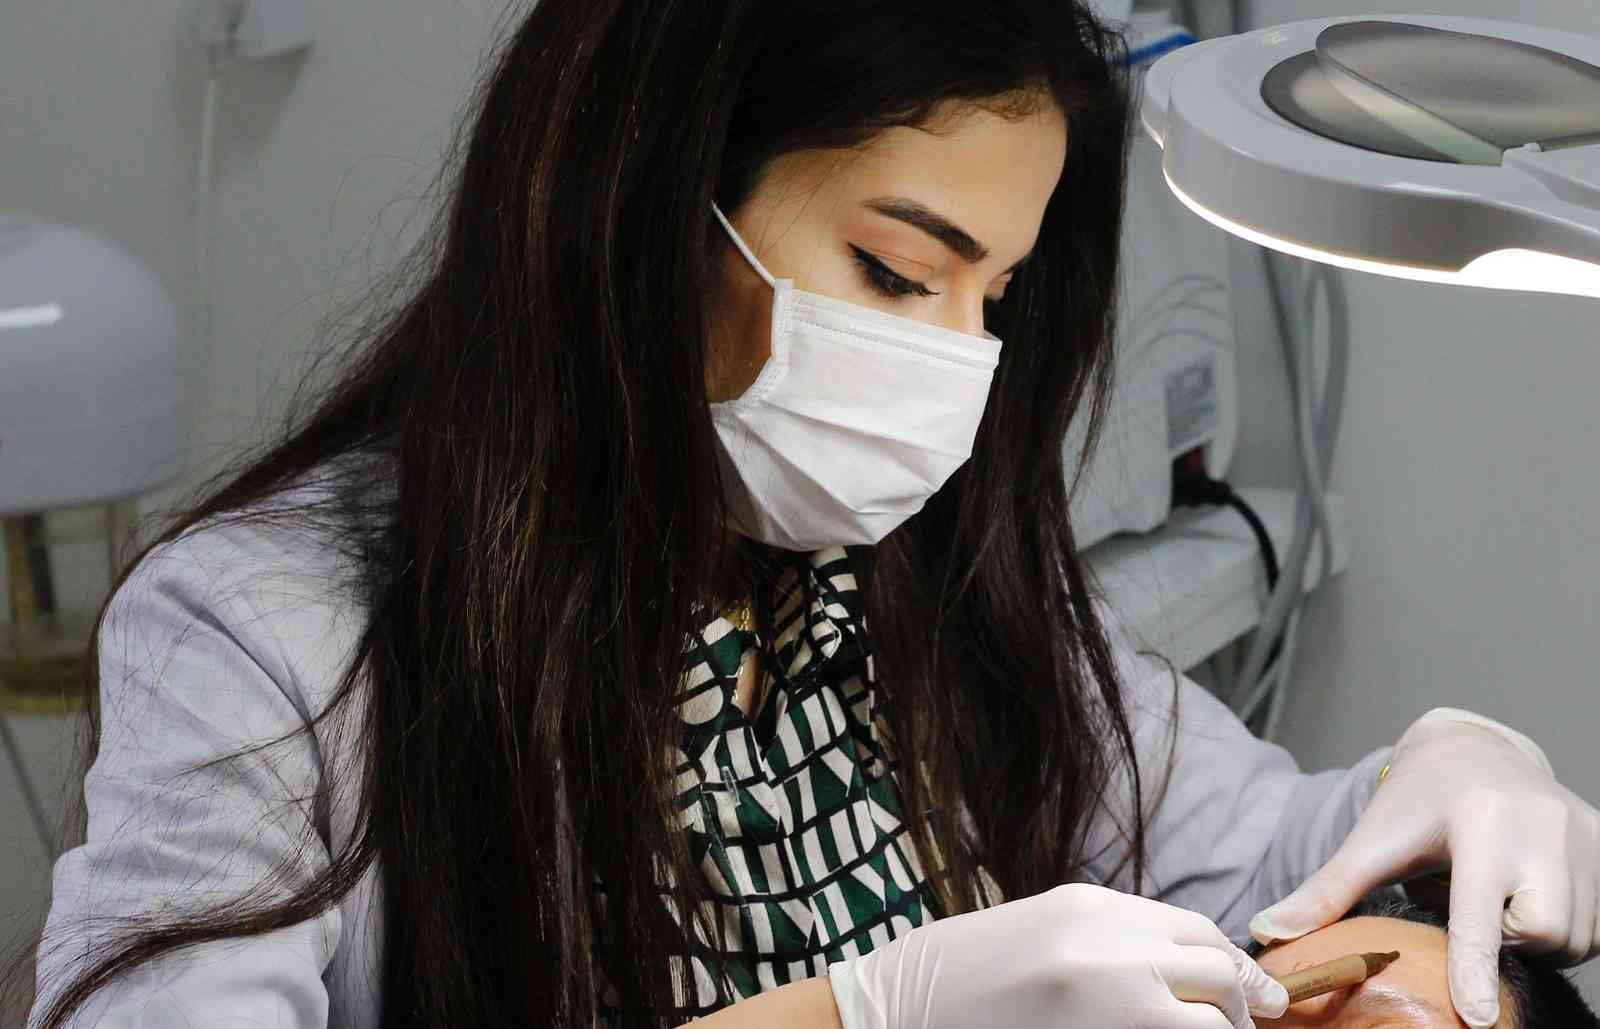 Uzman estetiysen Dalmış: “Microblading zannedilenden daha faydalı bir operasyondur” #diyarbakir